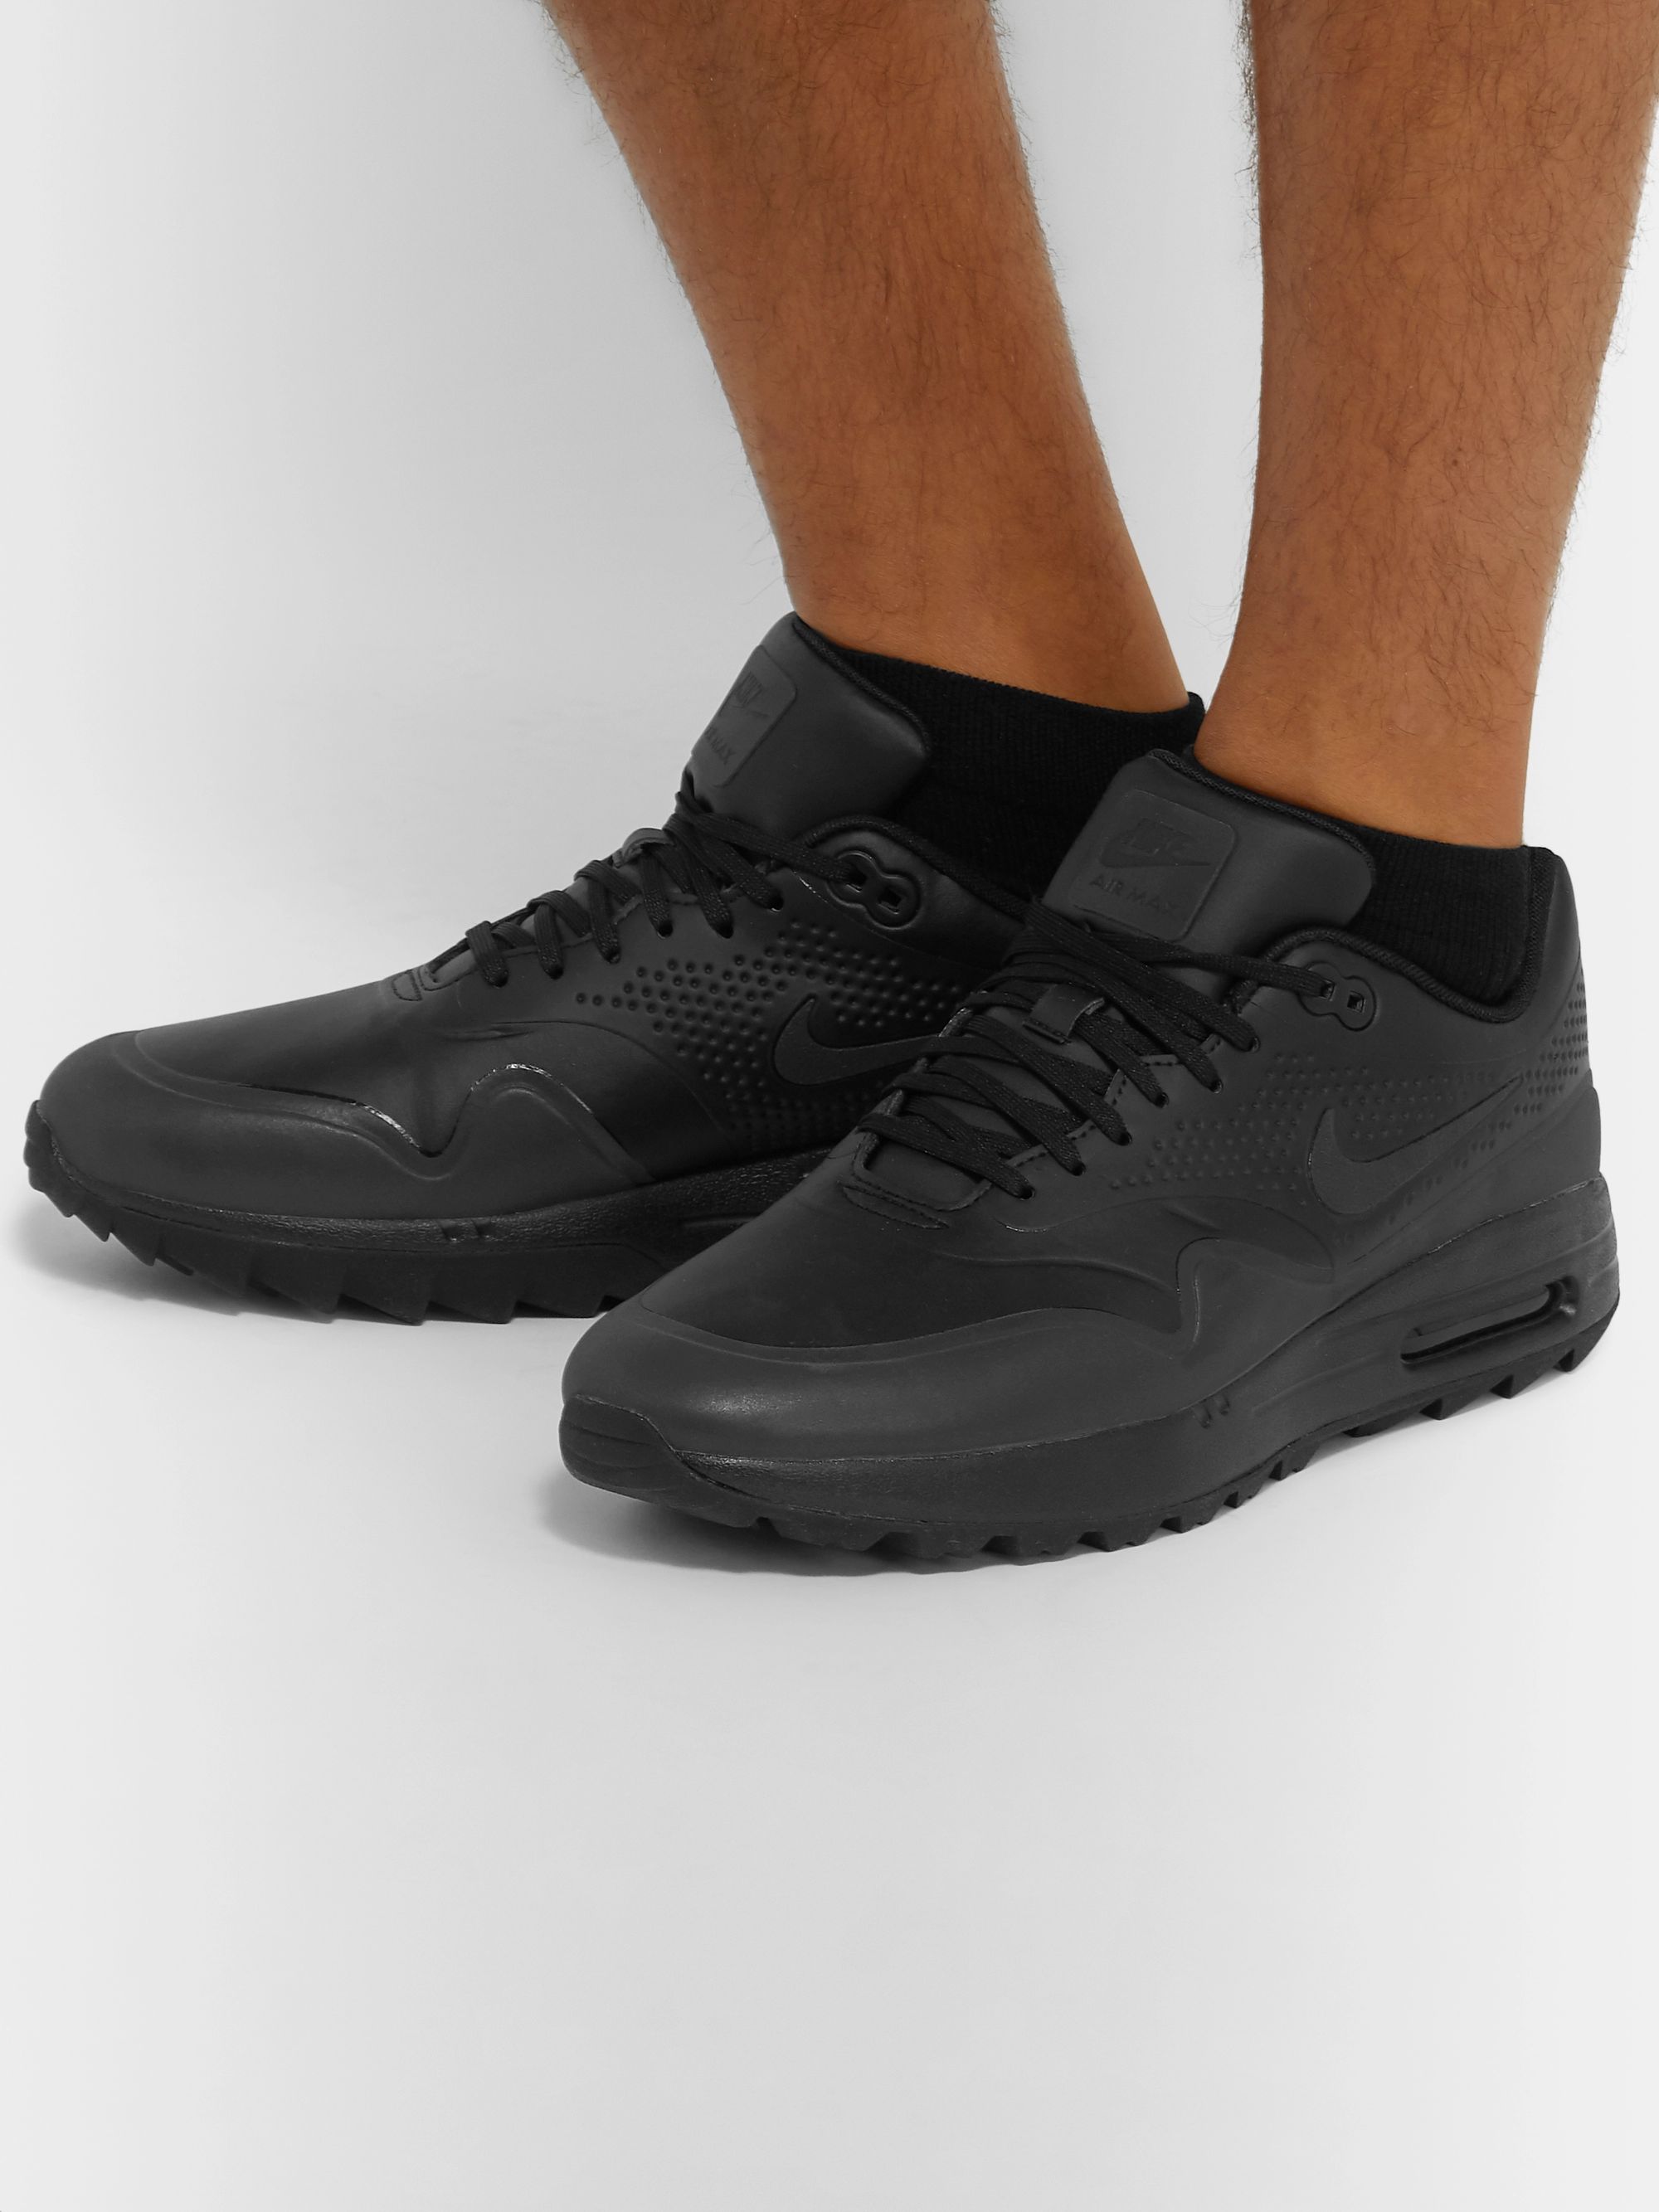 air max golf shoes black